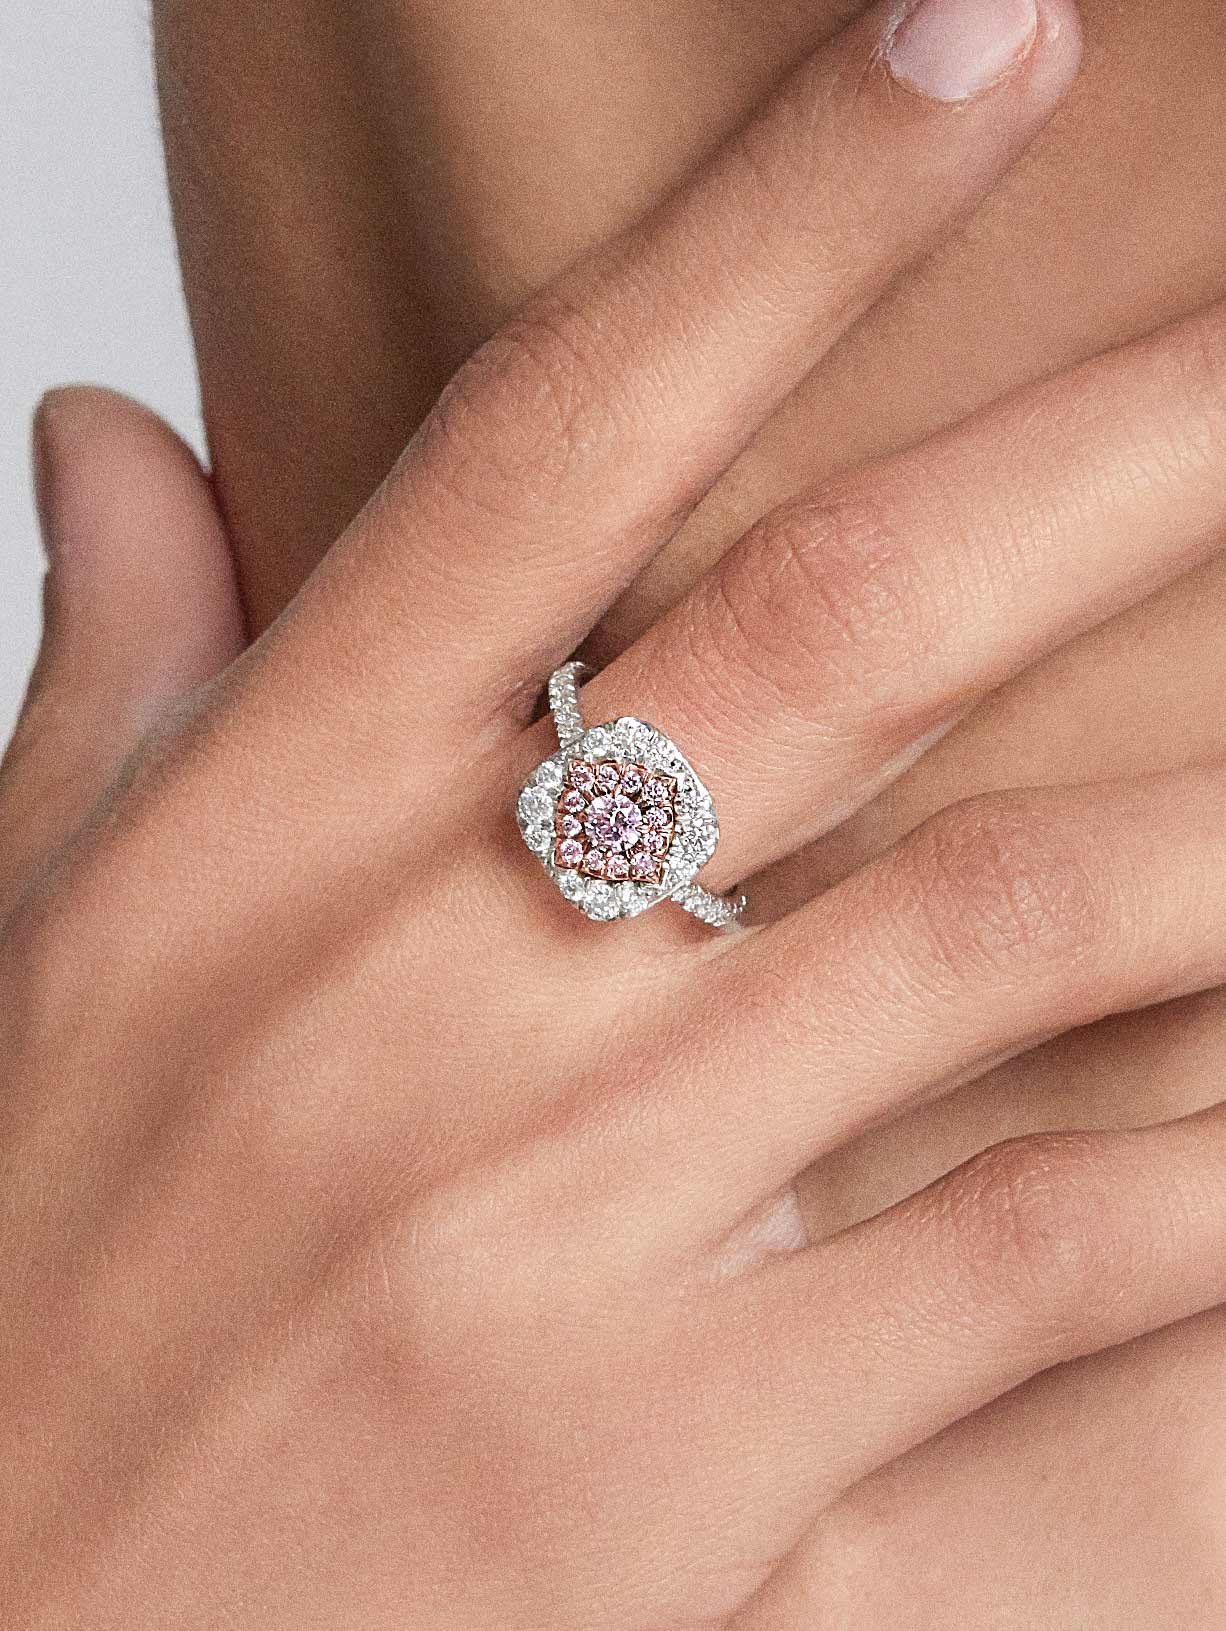 Argyle Pink™ Diamond Halo Ring - Pink Diamonds, J FINE - J Fine, ring - Pink Diamond Jewelry, argyle-pink™-diamond-halo-ring-by-j-f-i-n-e - Argyle Pink Diamonds